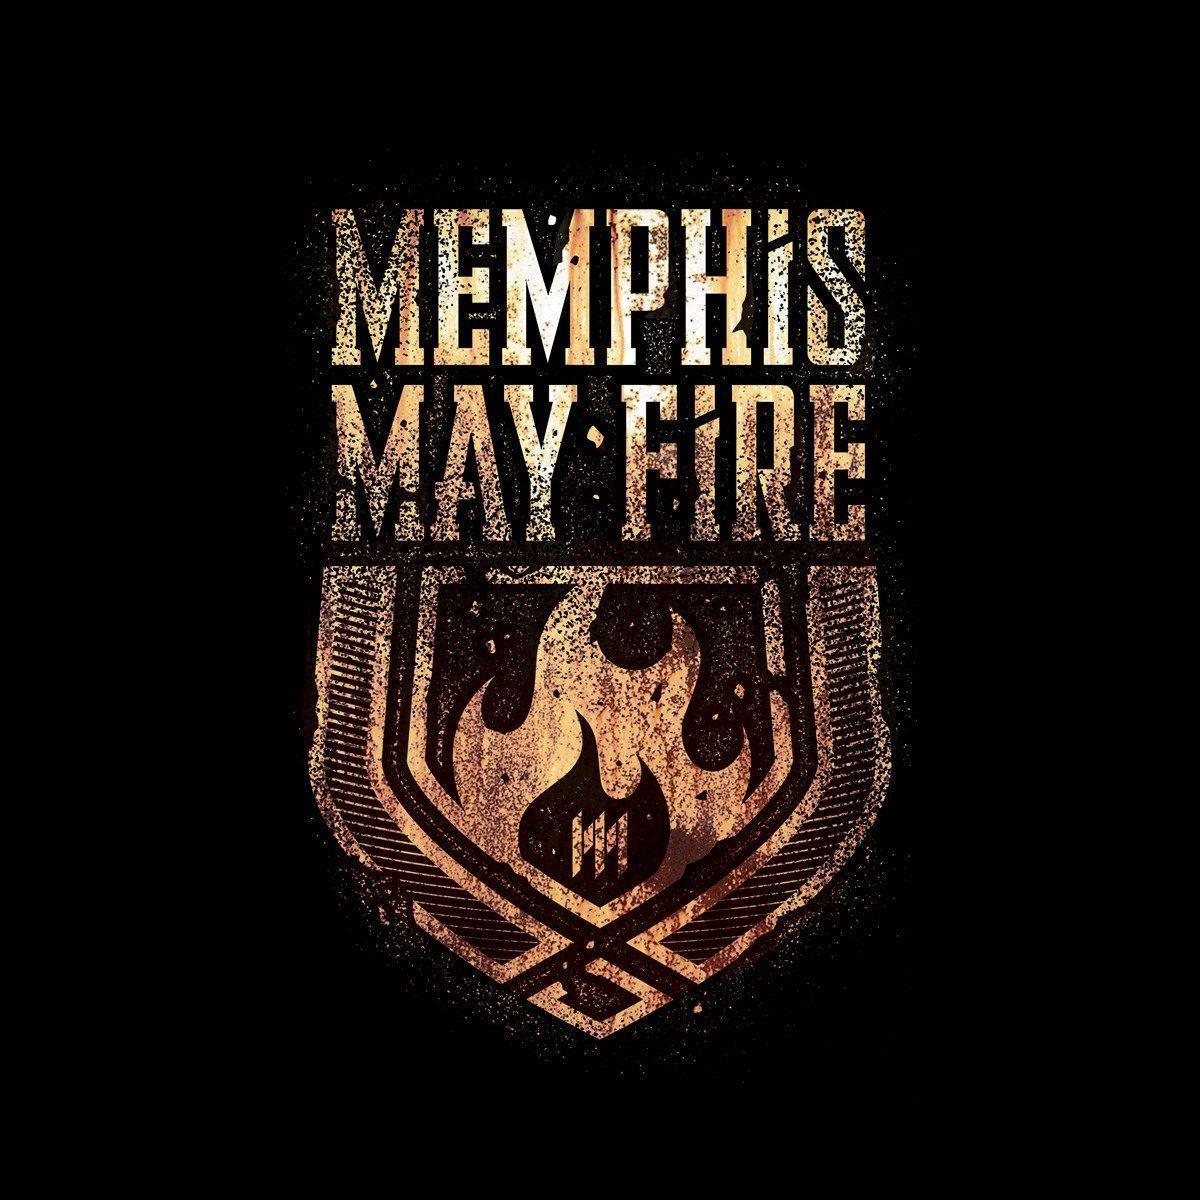 Memphis May Fire Wallpapers Wallpaper Cave HD Wallpapers Download Free Images Wallpaper [wallpaper981.blogspot.com]